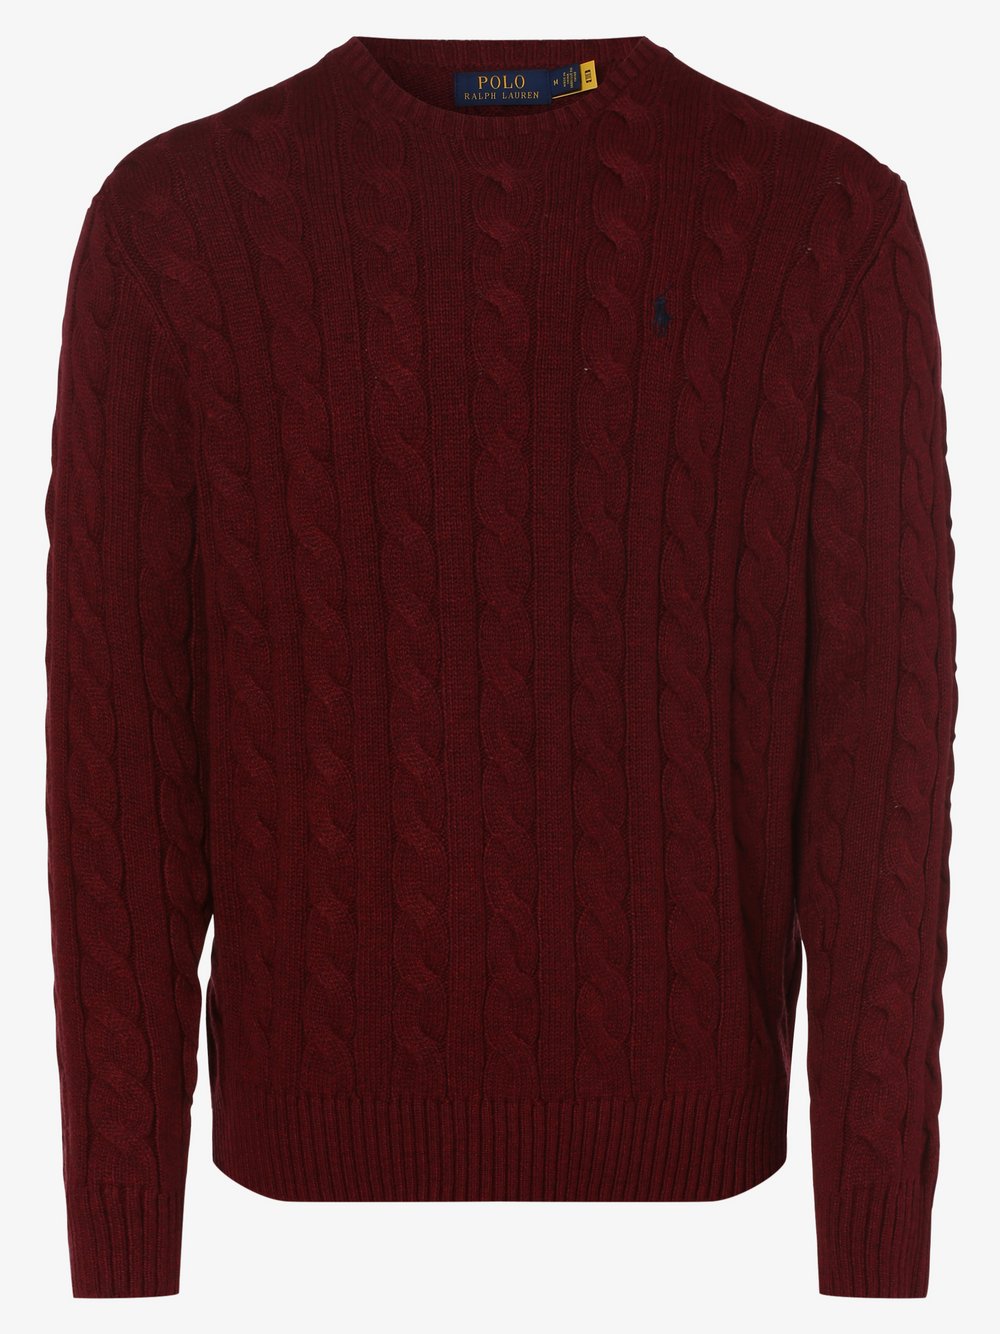 Polo Ralph Lauren - Sweter męski, czerwony